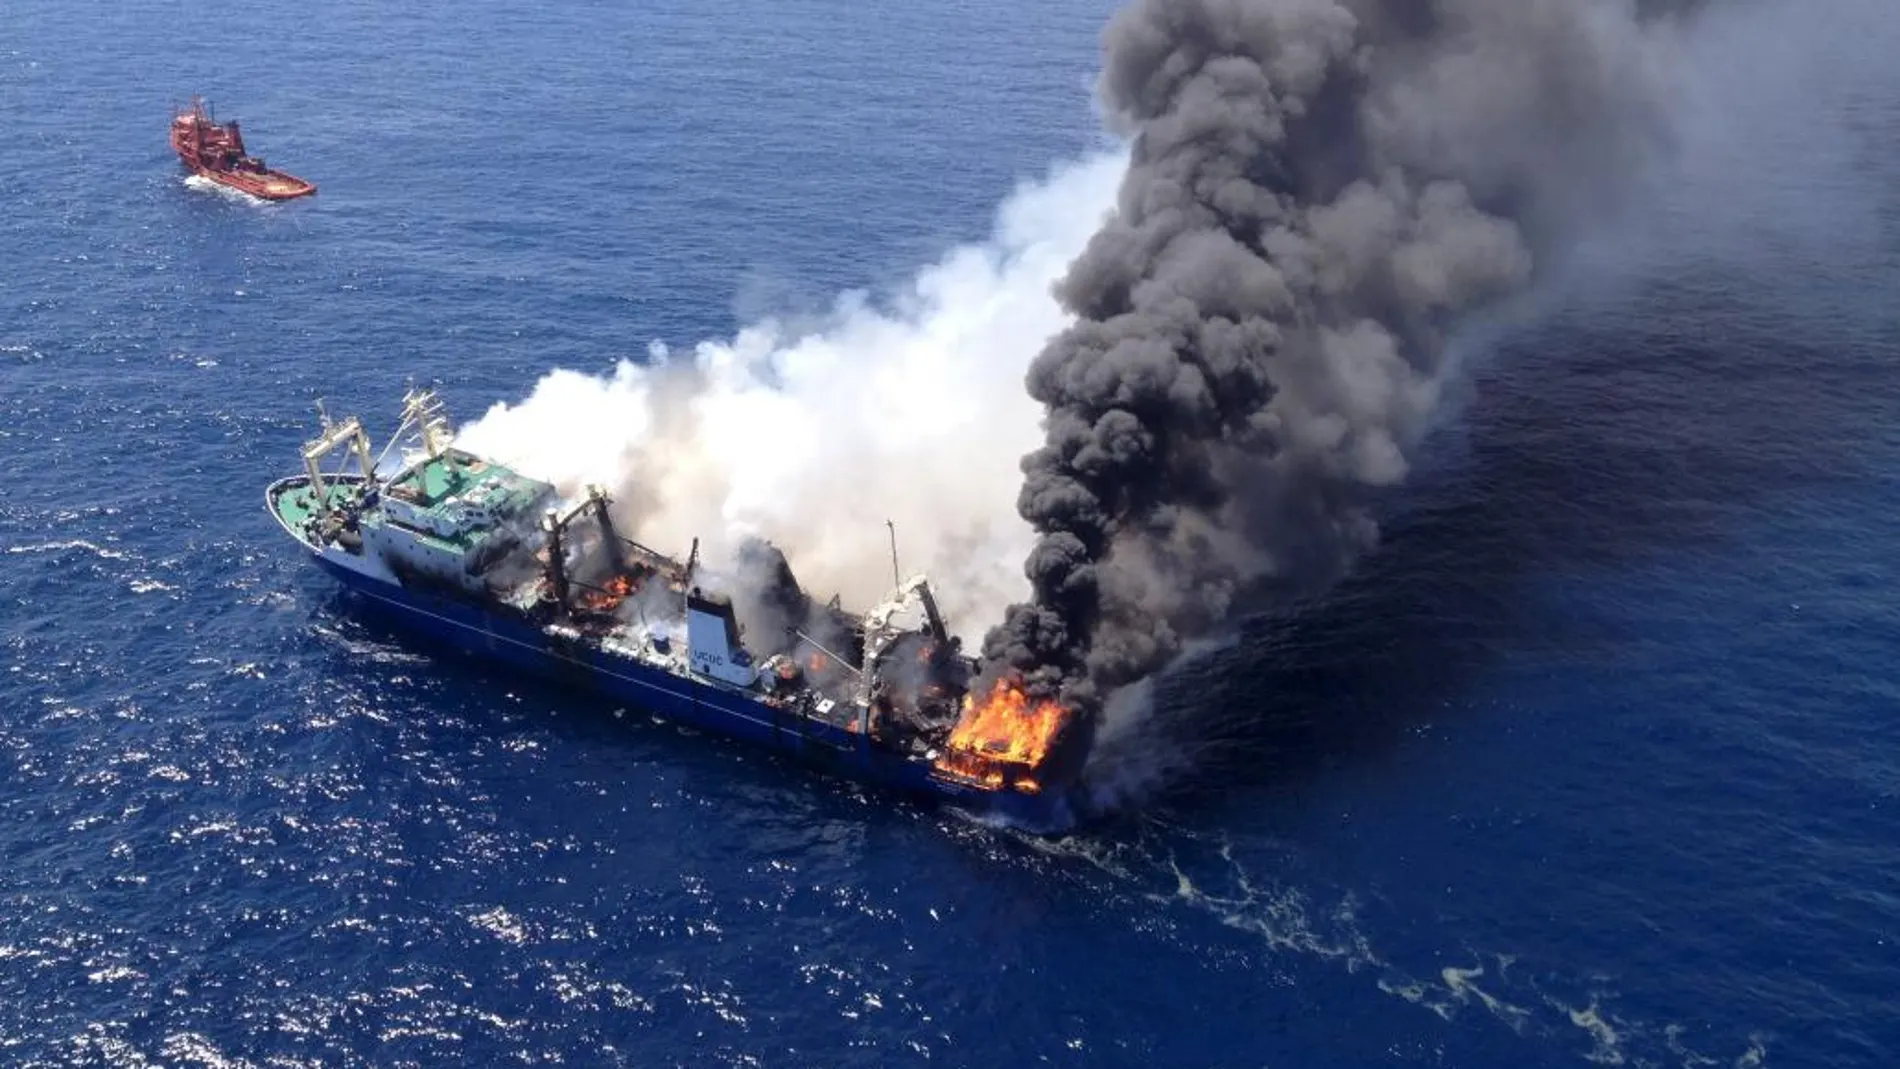 Imagen del incendio que provocó el posterior hundimiento del barco